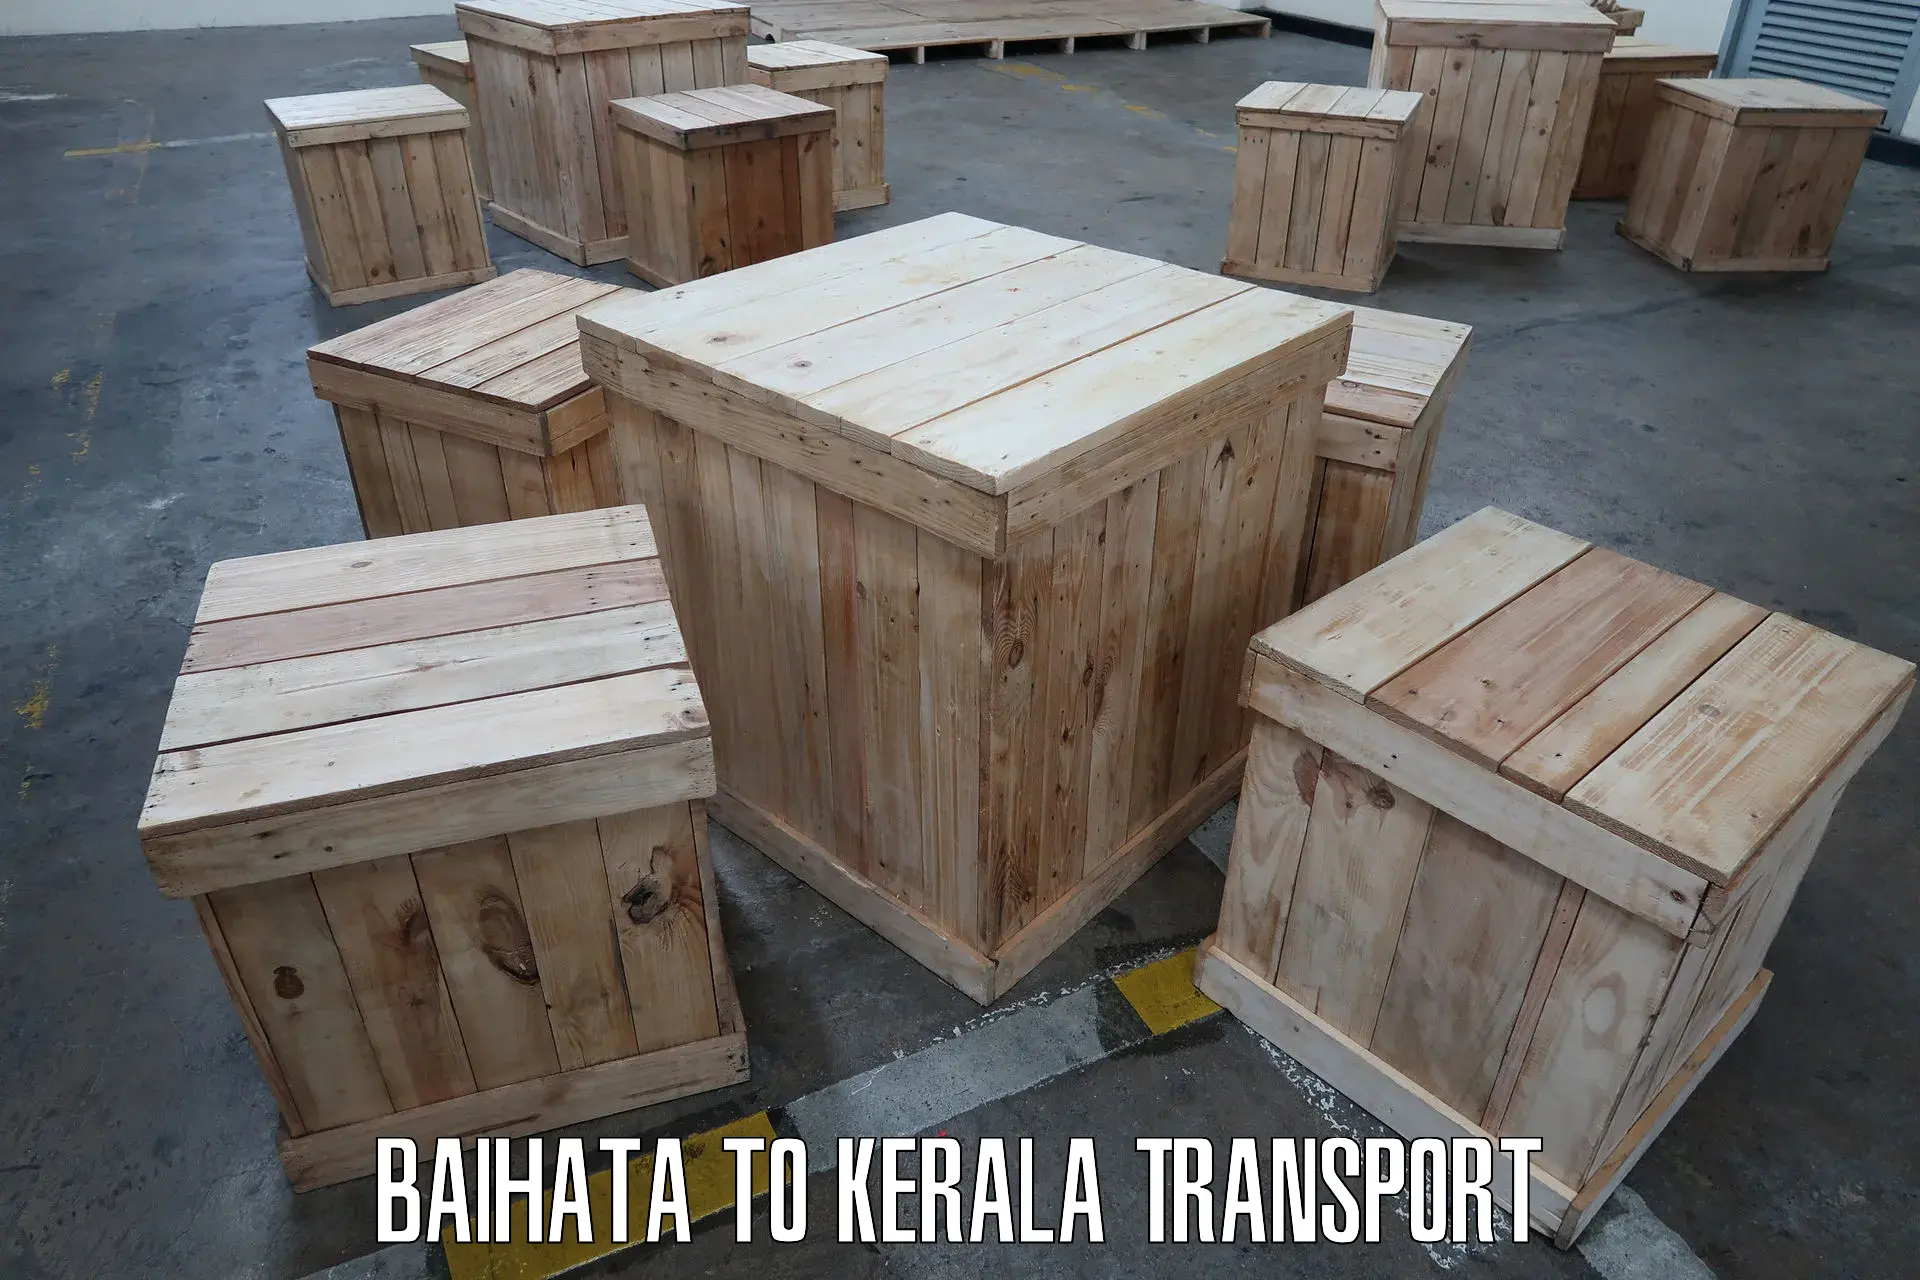 Daily transport service Baihata to Kerala